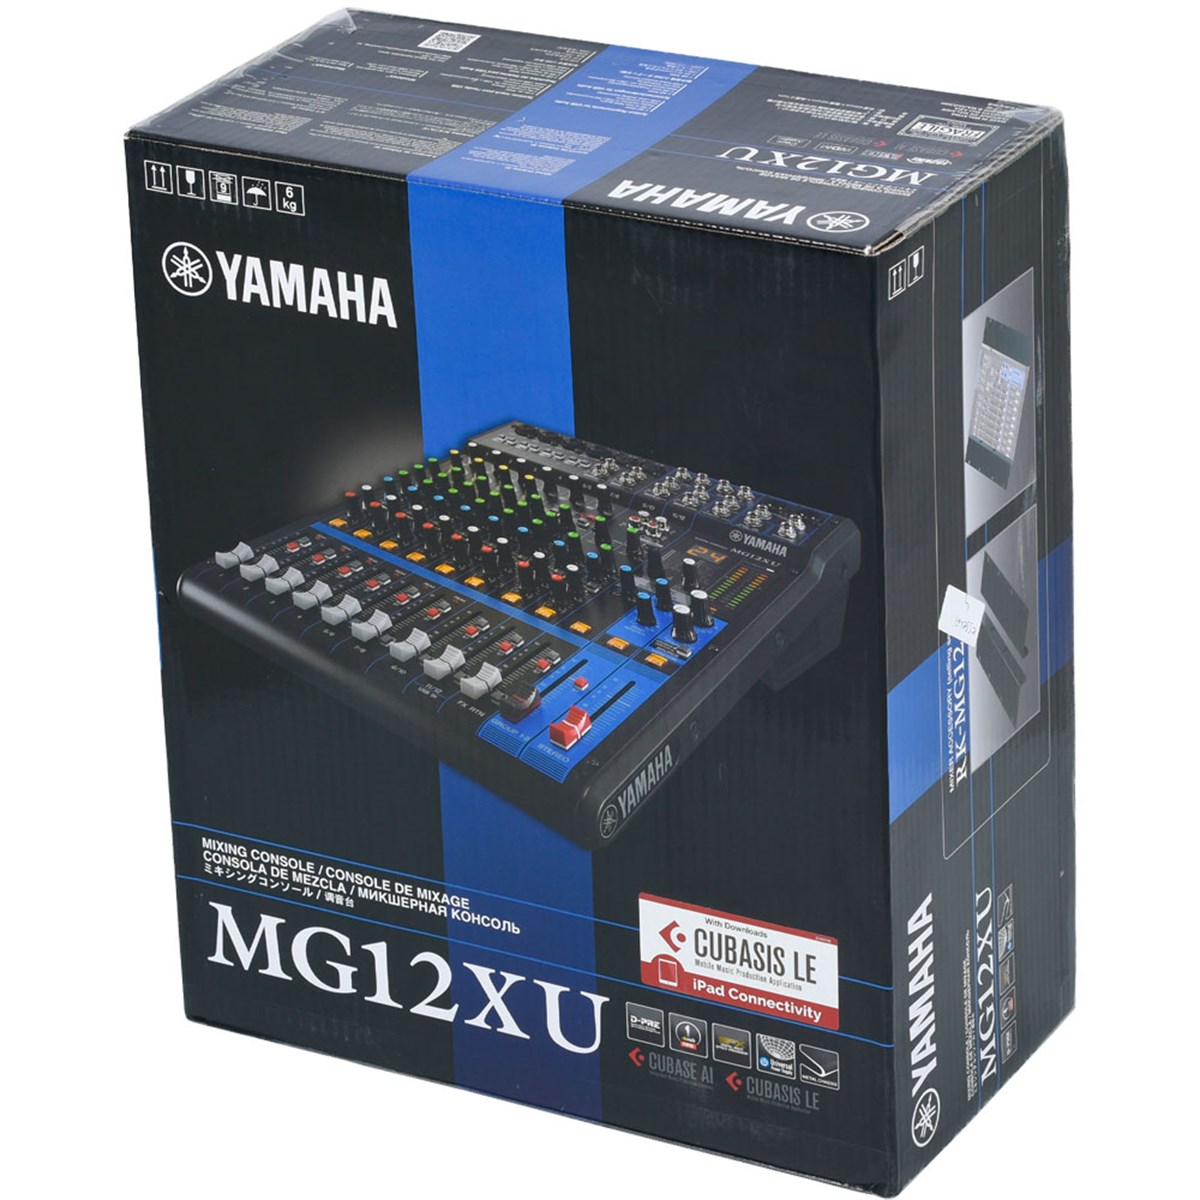 YAMAHA 12 Kanall Usb Li Deck Mixer MG-12 XU